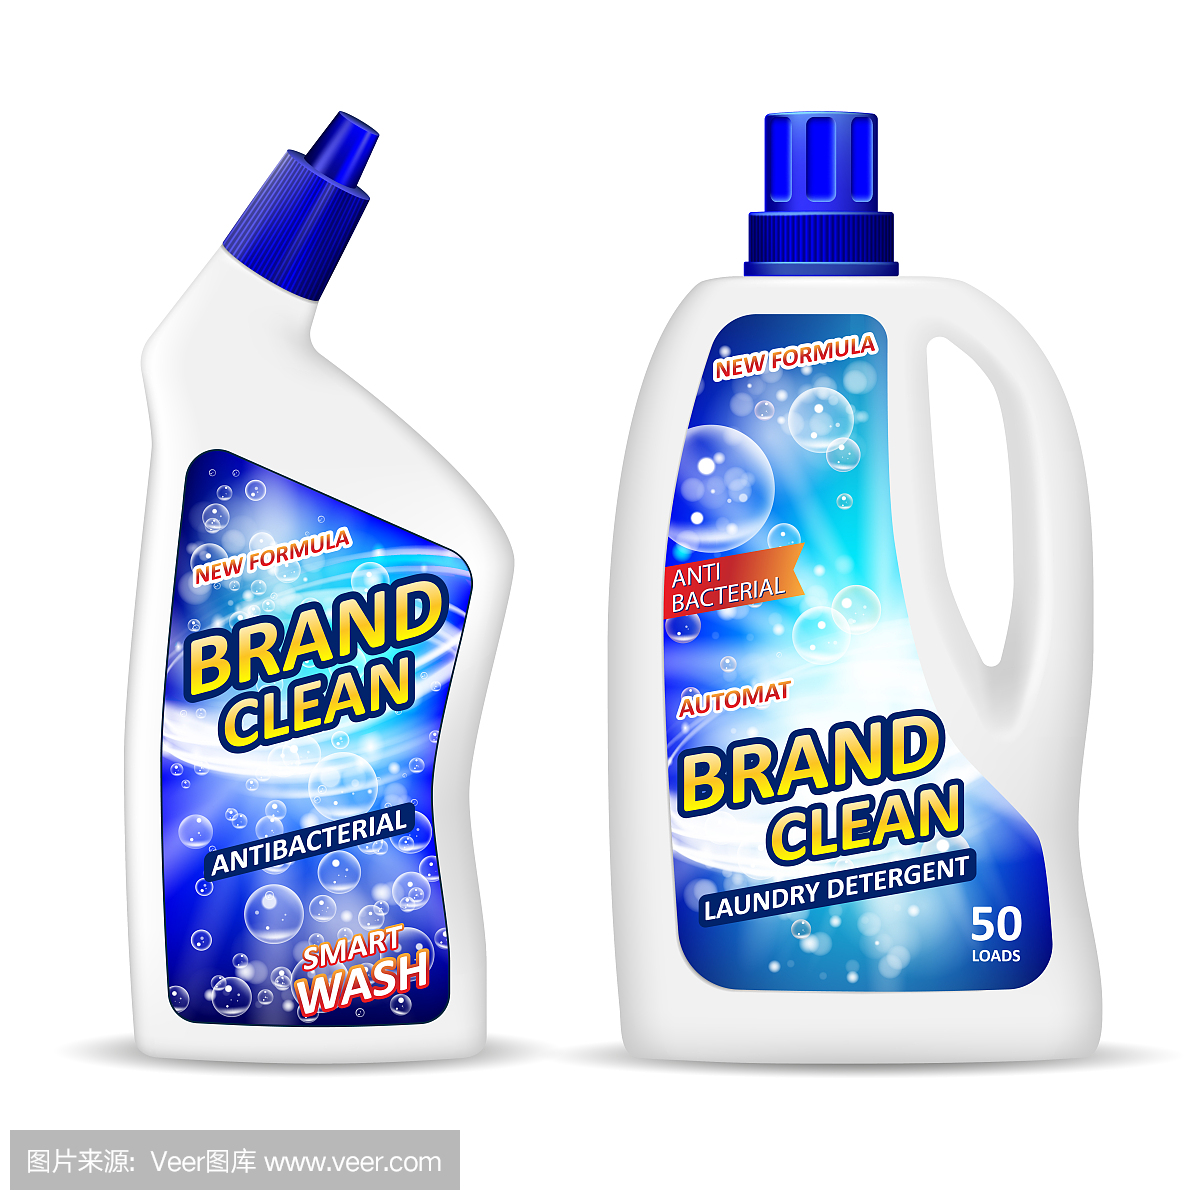 真实的塑料瓶子模型与标签,抗菌凝胶洗衣粉清洁浴室,液体肥皂厕所清洁剂。白色包装设计为您的品牌。矢量图